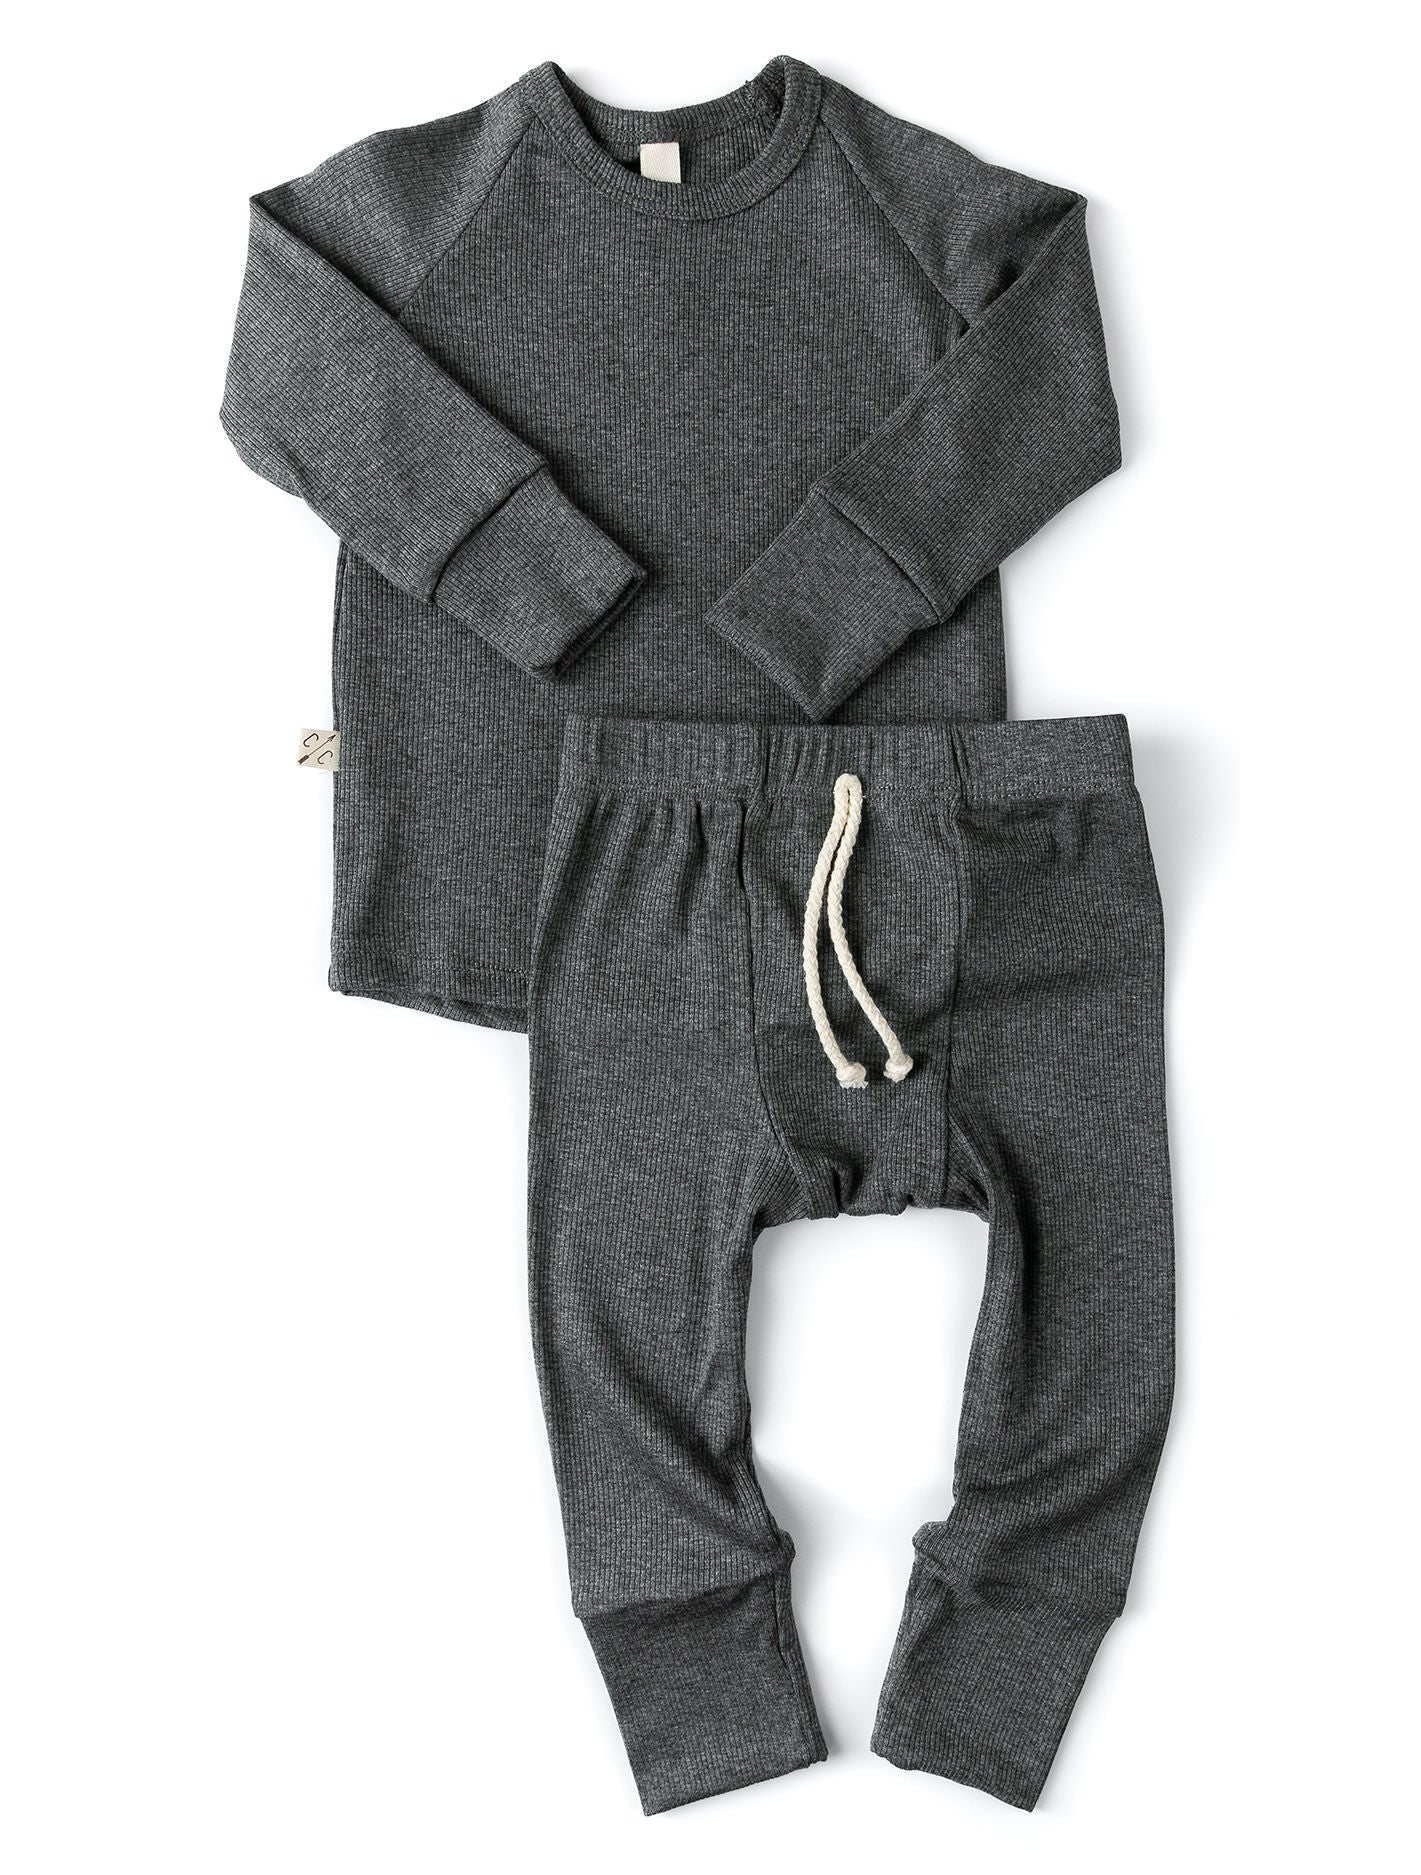 rib knit long sleeve tee - iron gray